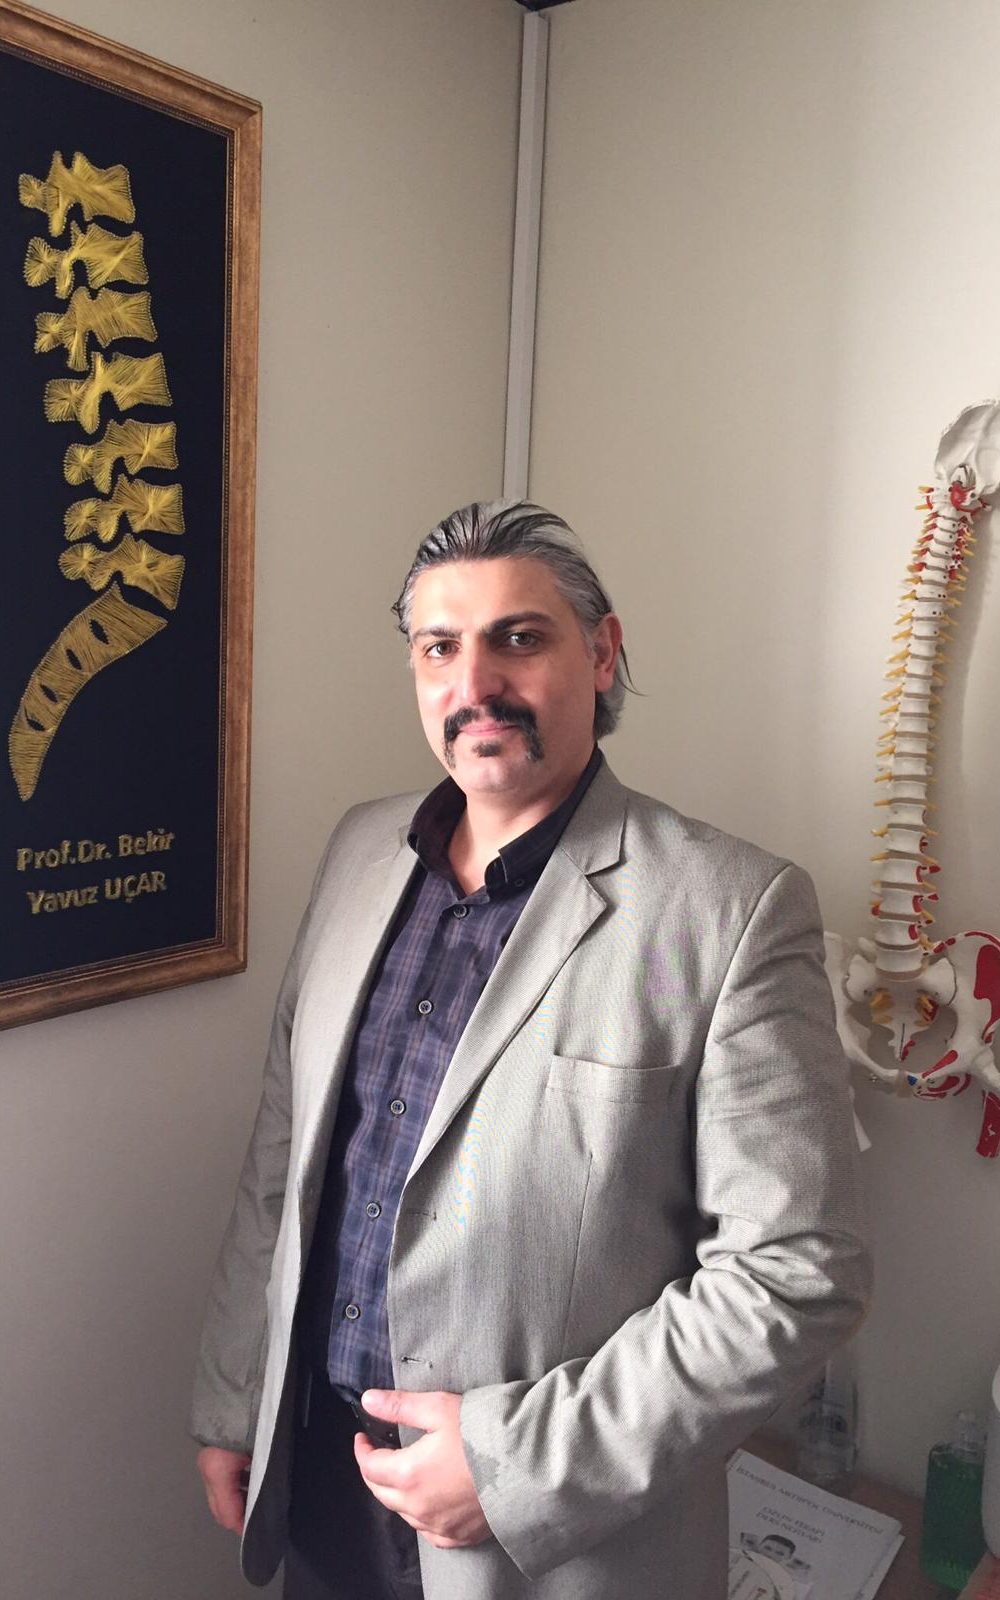 Prof. Dr. Bekir Yavuz Ogar